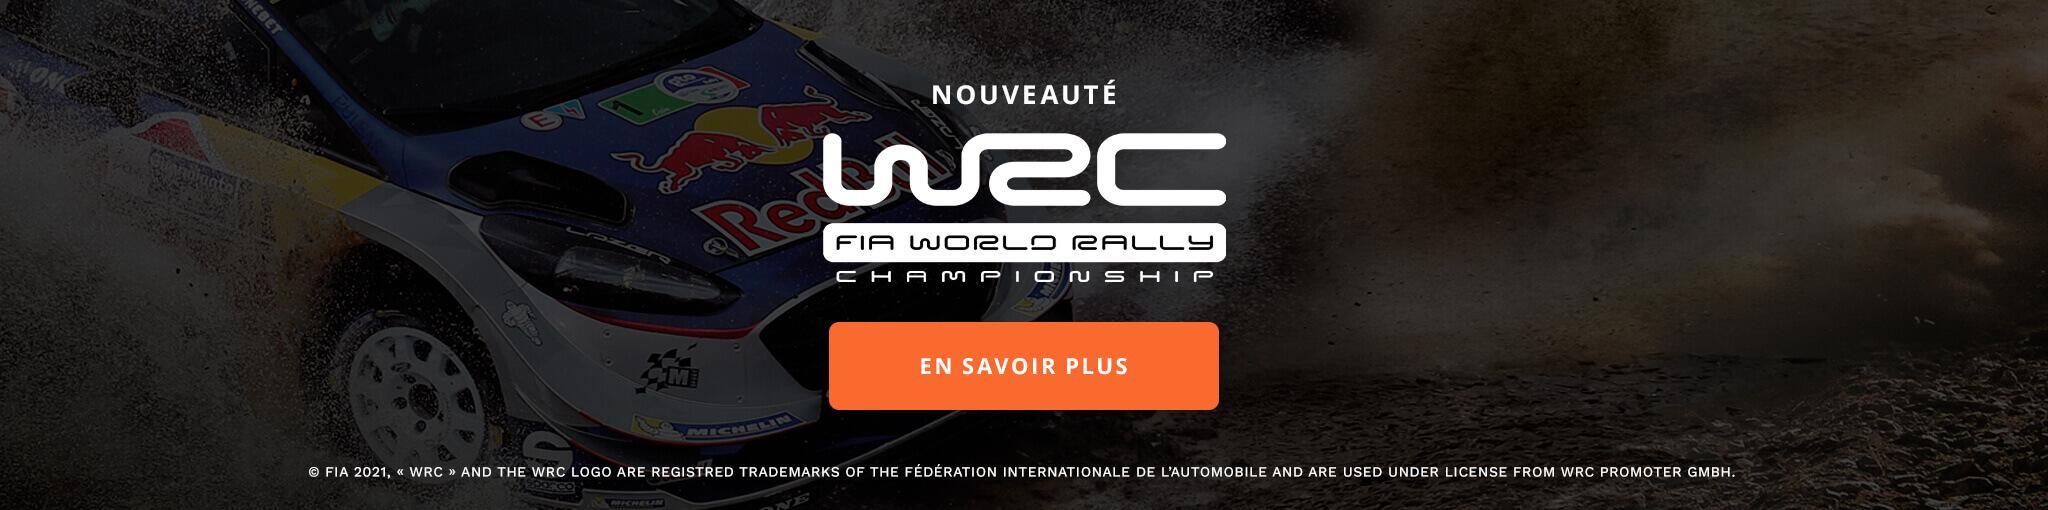 WRC LA COLLECTION OFFICIELLE